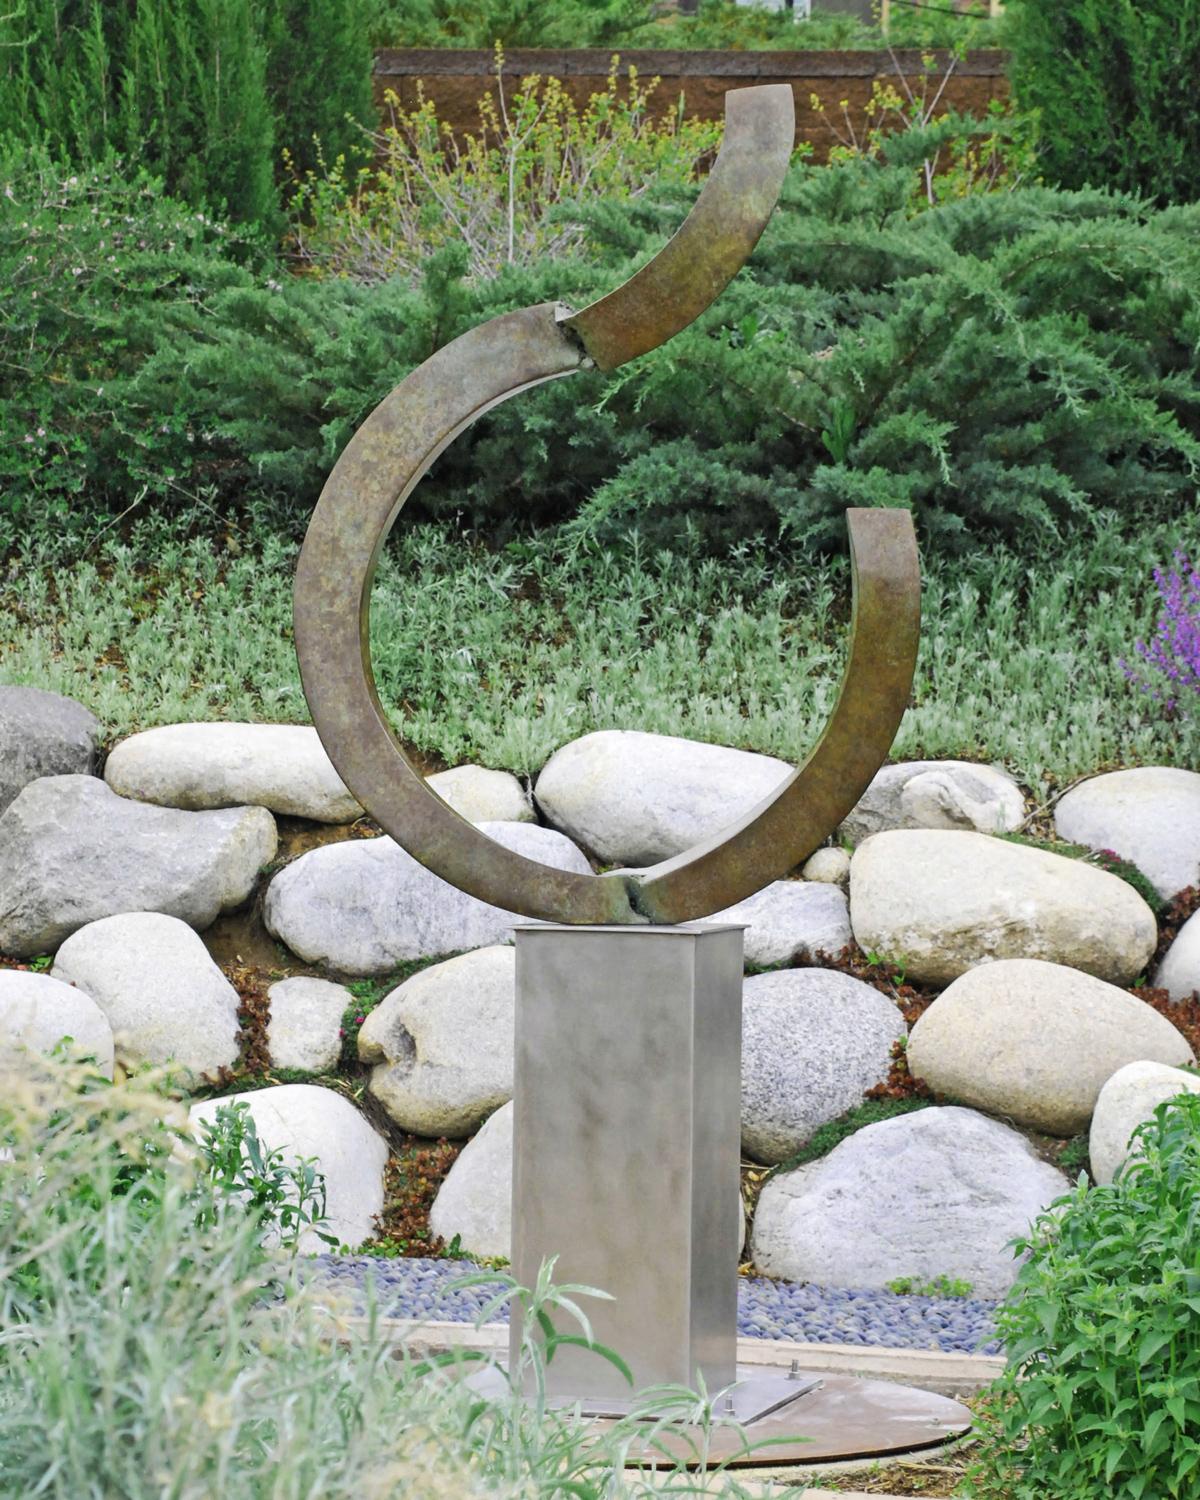 Cette sculpture en bronze magnifiquement patiné, composée de courbes segmentées, repose sur un haut piédestal en acier inoxydable. 

Frank Morbillo est né à I Franks et a grandi à Long Island. Jeune adulte, il est parti vers l'ouest, d'abord dans le